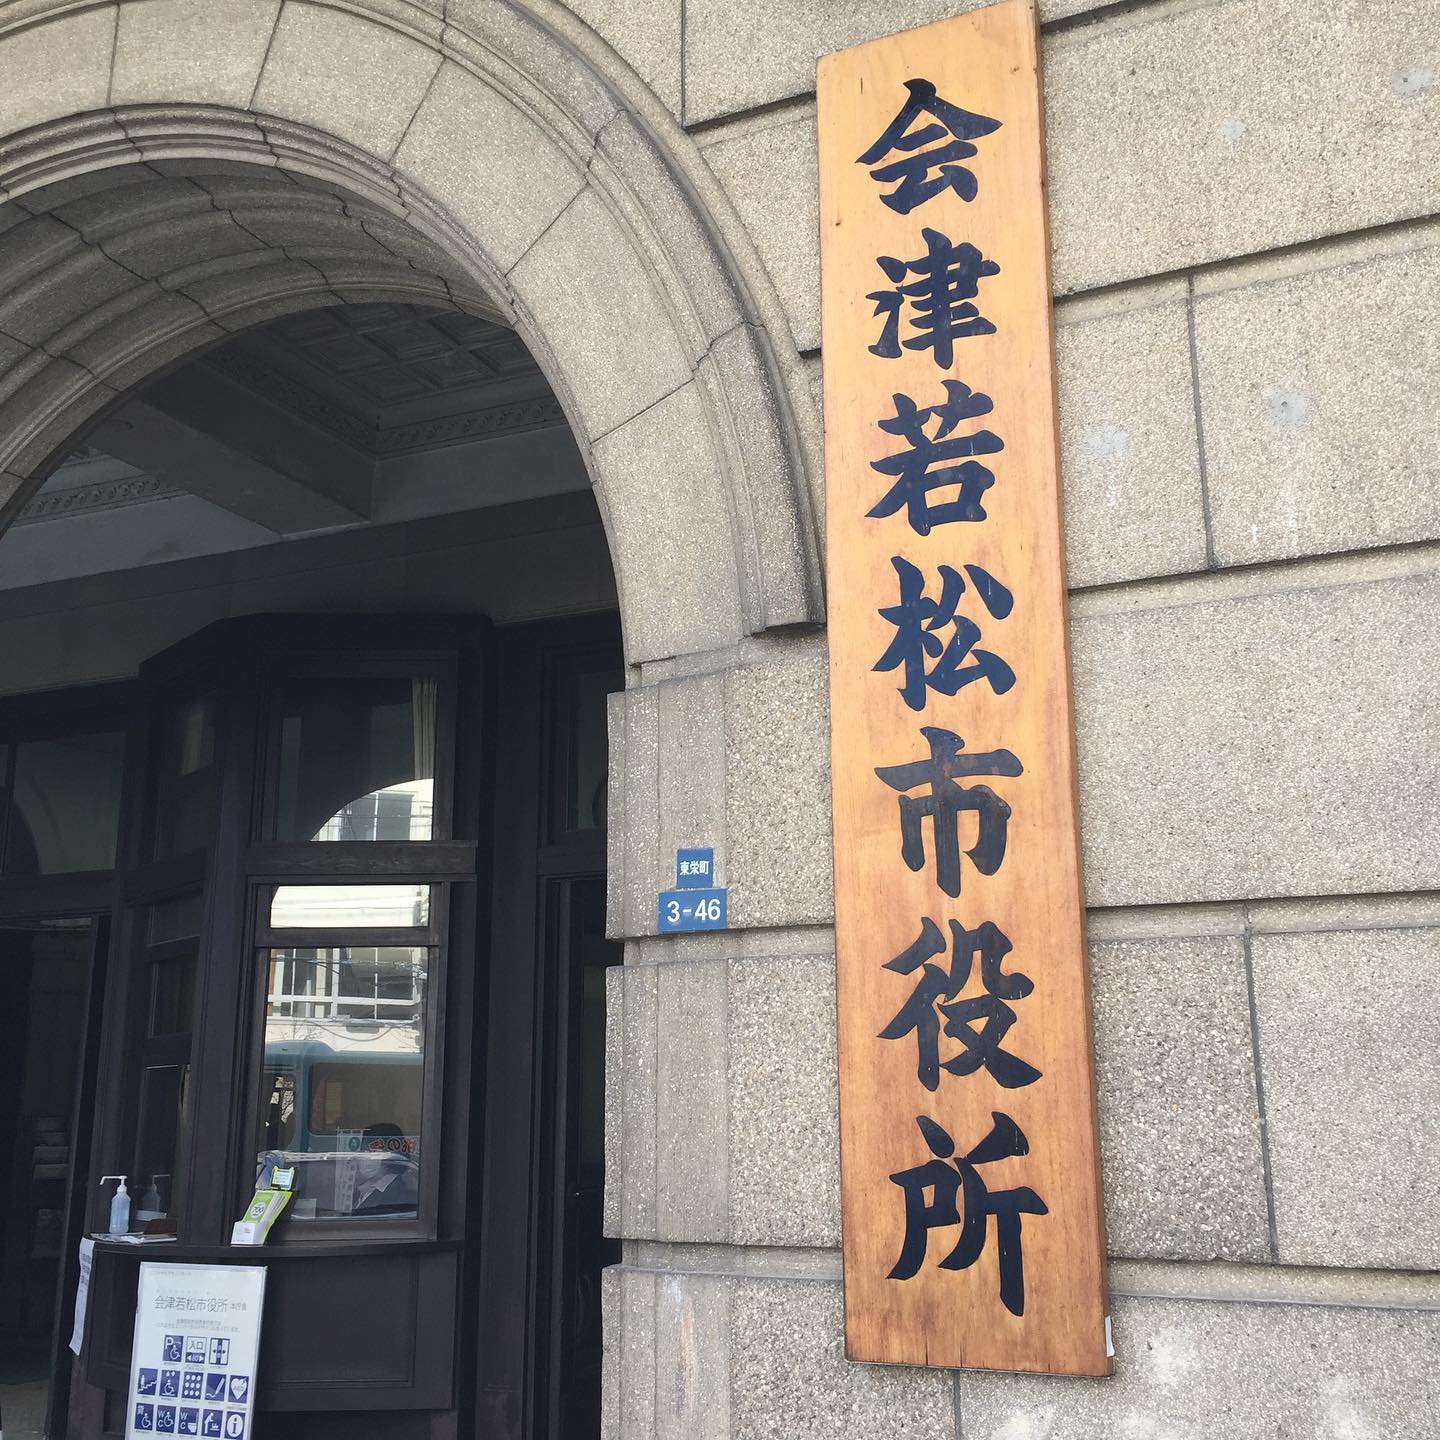 【声を届ける！】会津若松市役所へお邪魔しています。今日は、会津若松市議会さんの「政策形成サイクル」という取り組みを学ばせていただきます。町の皆さんの声をどのように集め、政策立案へ繋げていくのか。学びたいと思います。